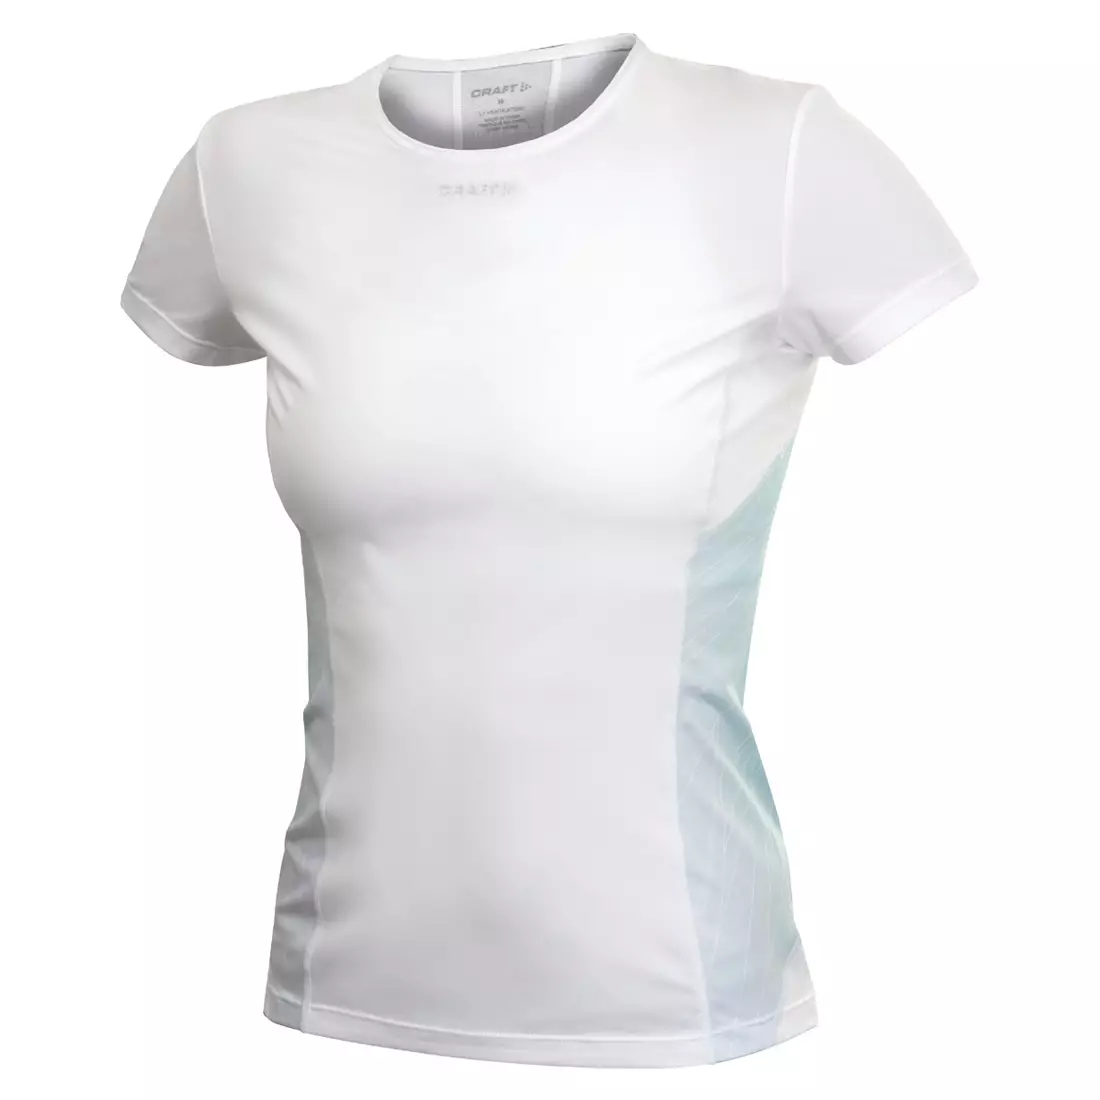 CRAFT COOL - women's short-sleeved T-shirt 193684-6900